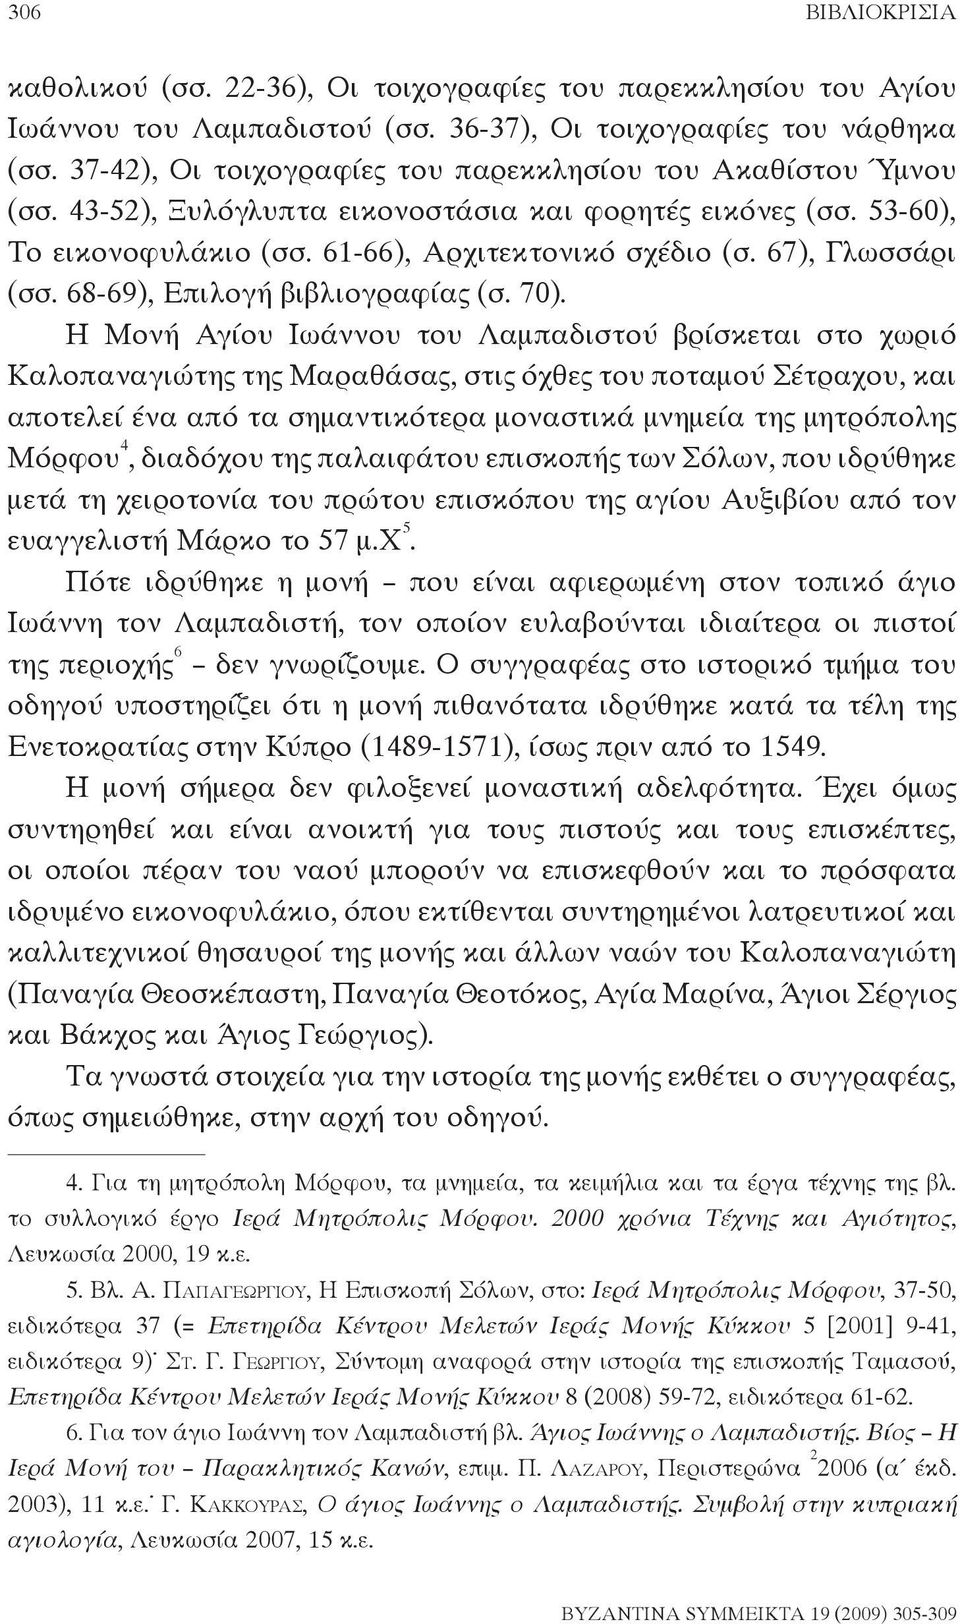 67), Γλωσσάρι (σσ. 68-69), Επιλογή βιβλιογραφίας (σ. 70).